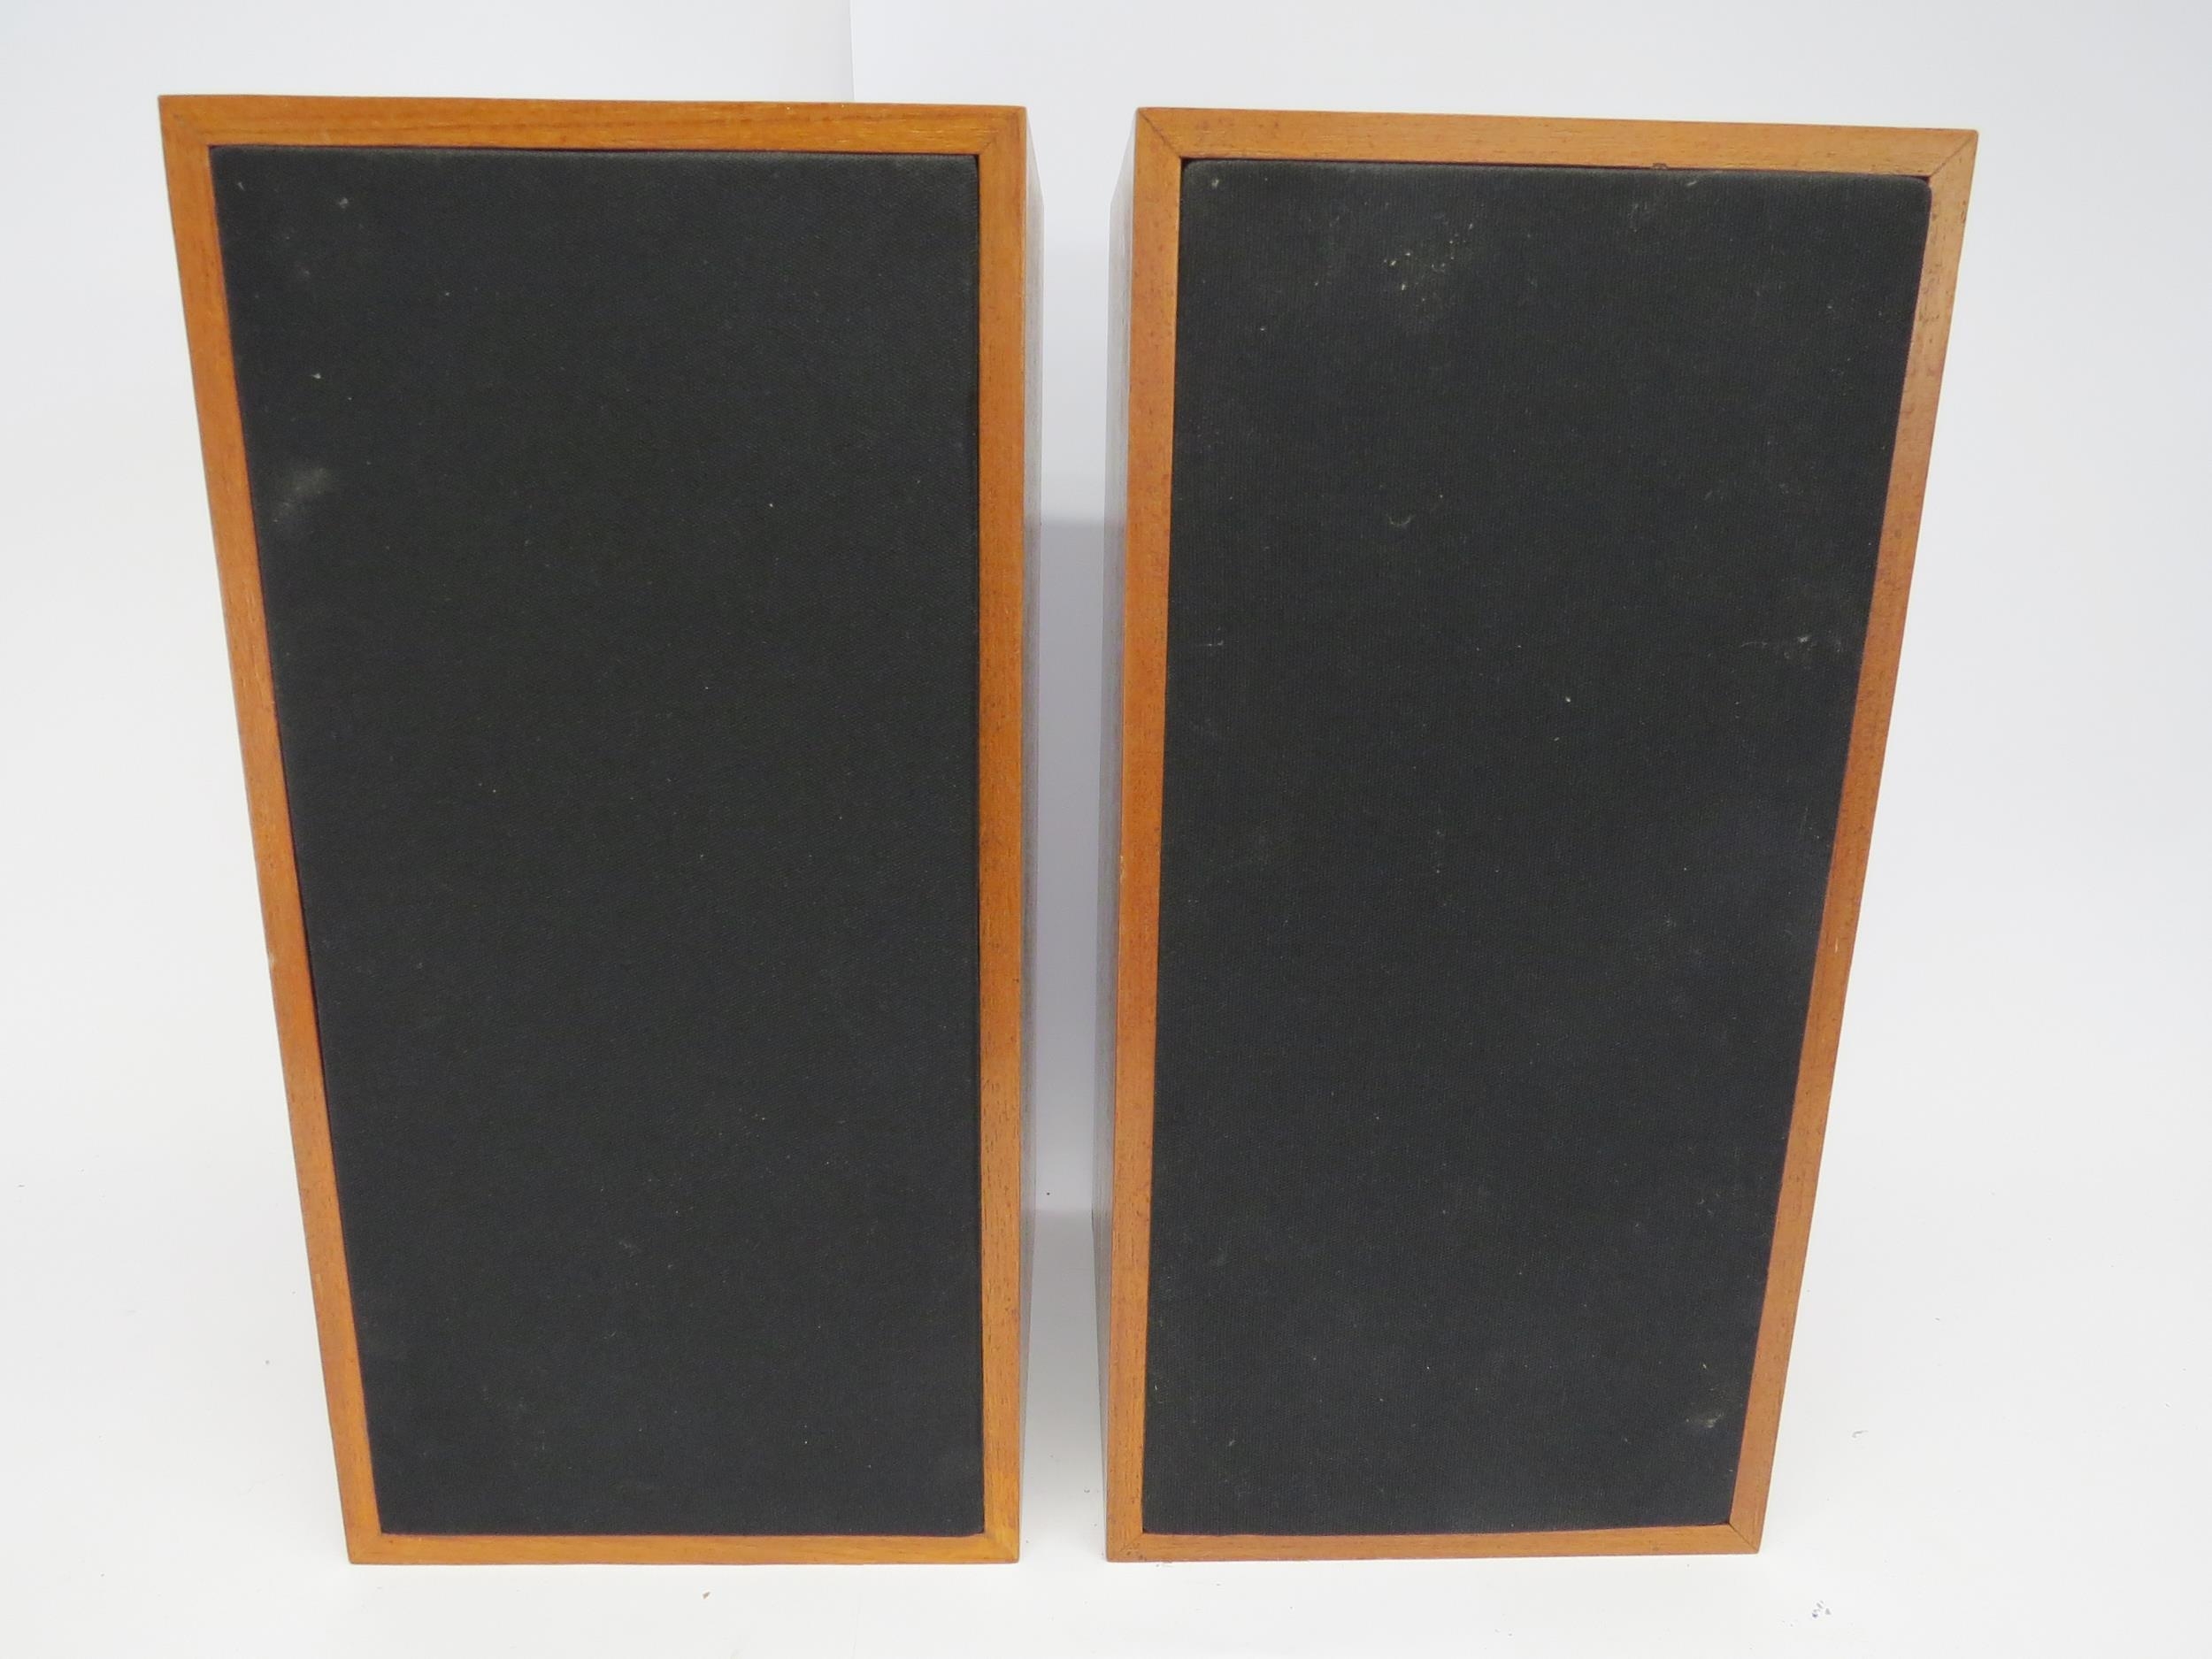 A pair of Bowers & Wilkins (B&W) DM5 speakers